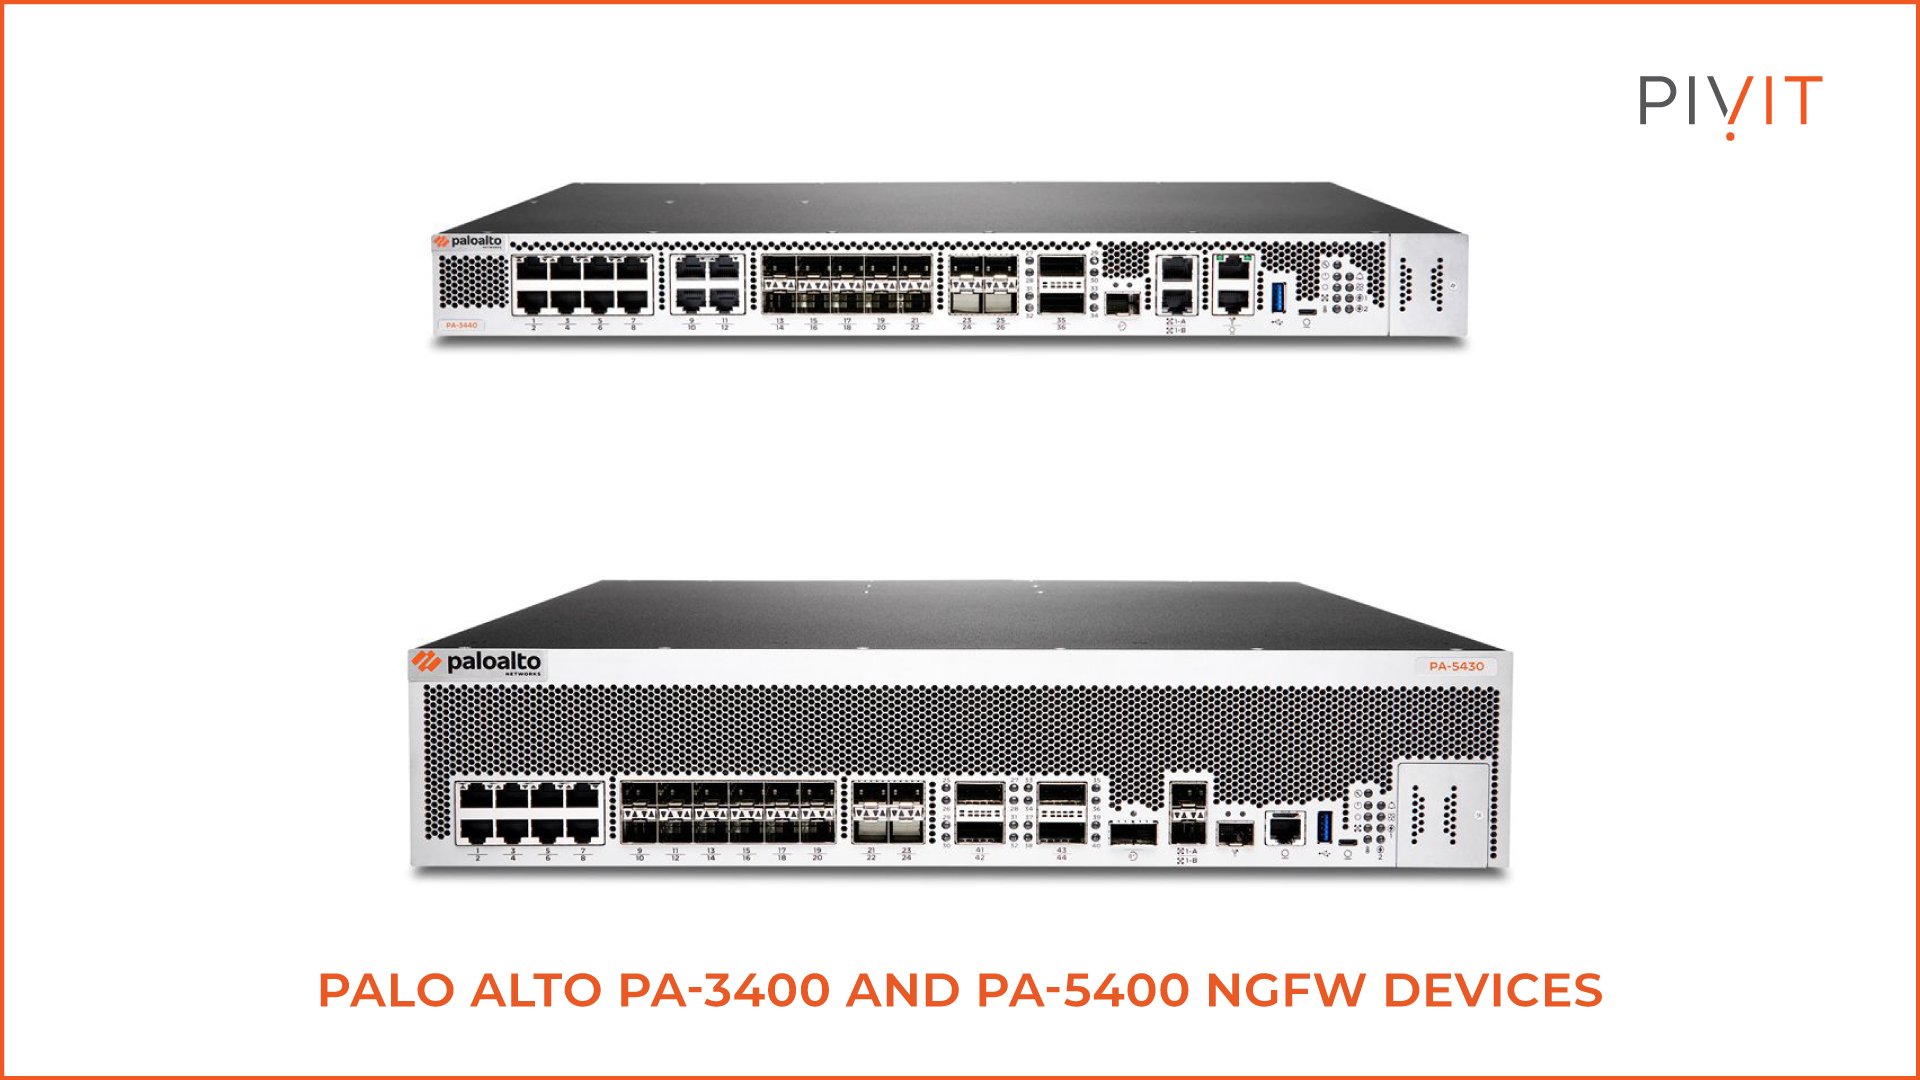 Palo Alto PA-3400 and PA-5400 NGFW devices